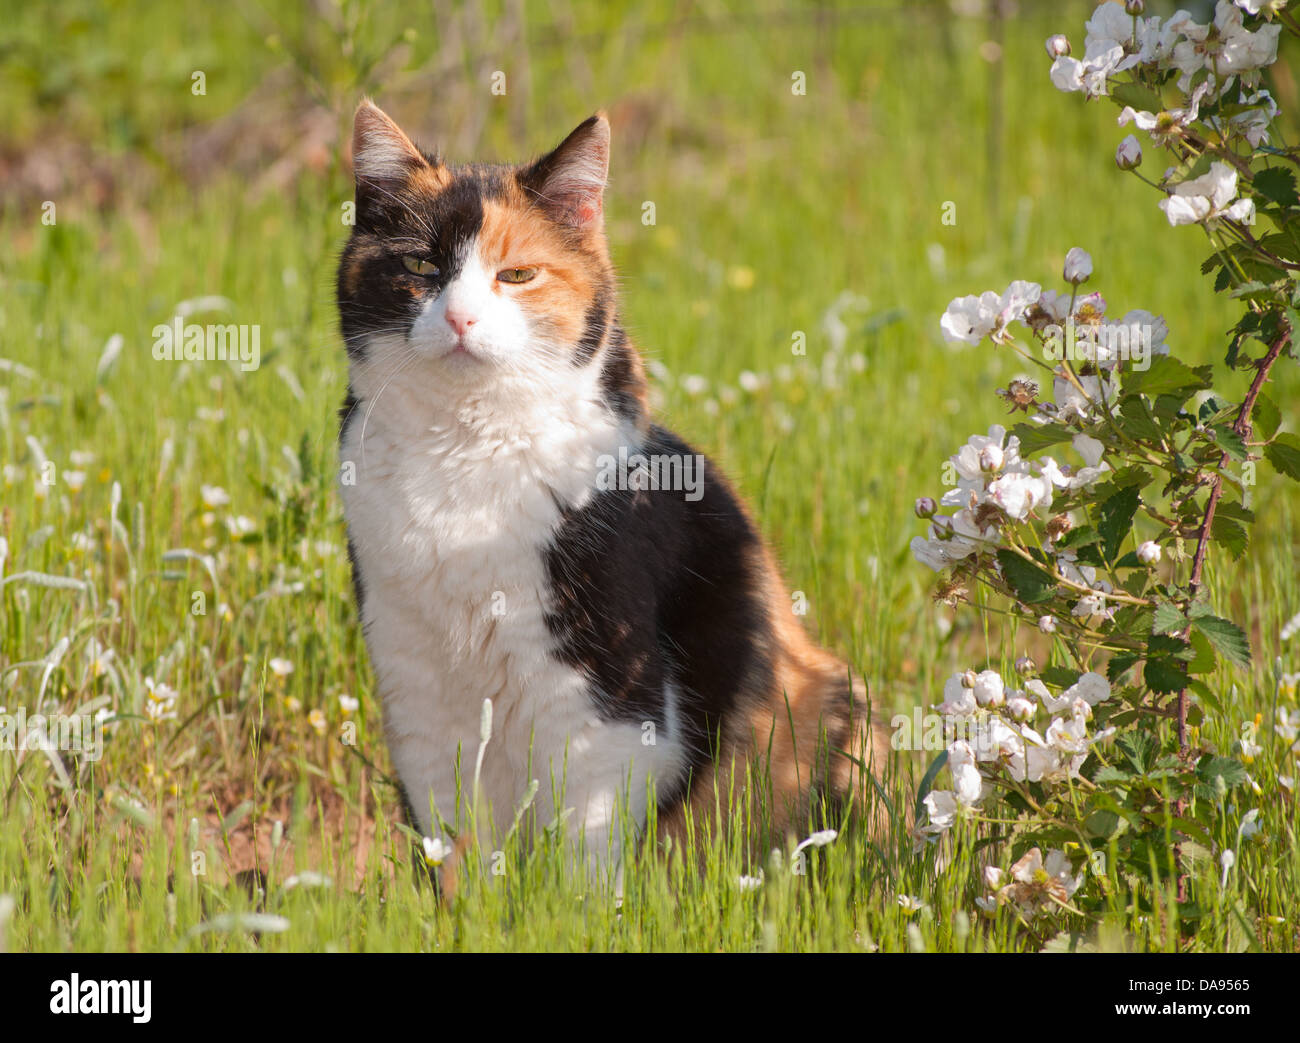 Bella gatta calico seduto in erba accanto a more selvatiche in piena fioritura Foto Stock